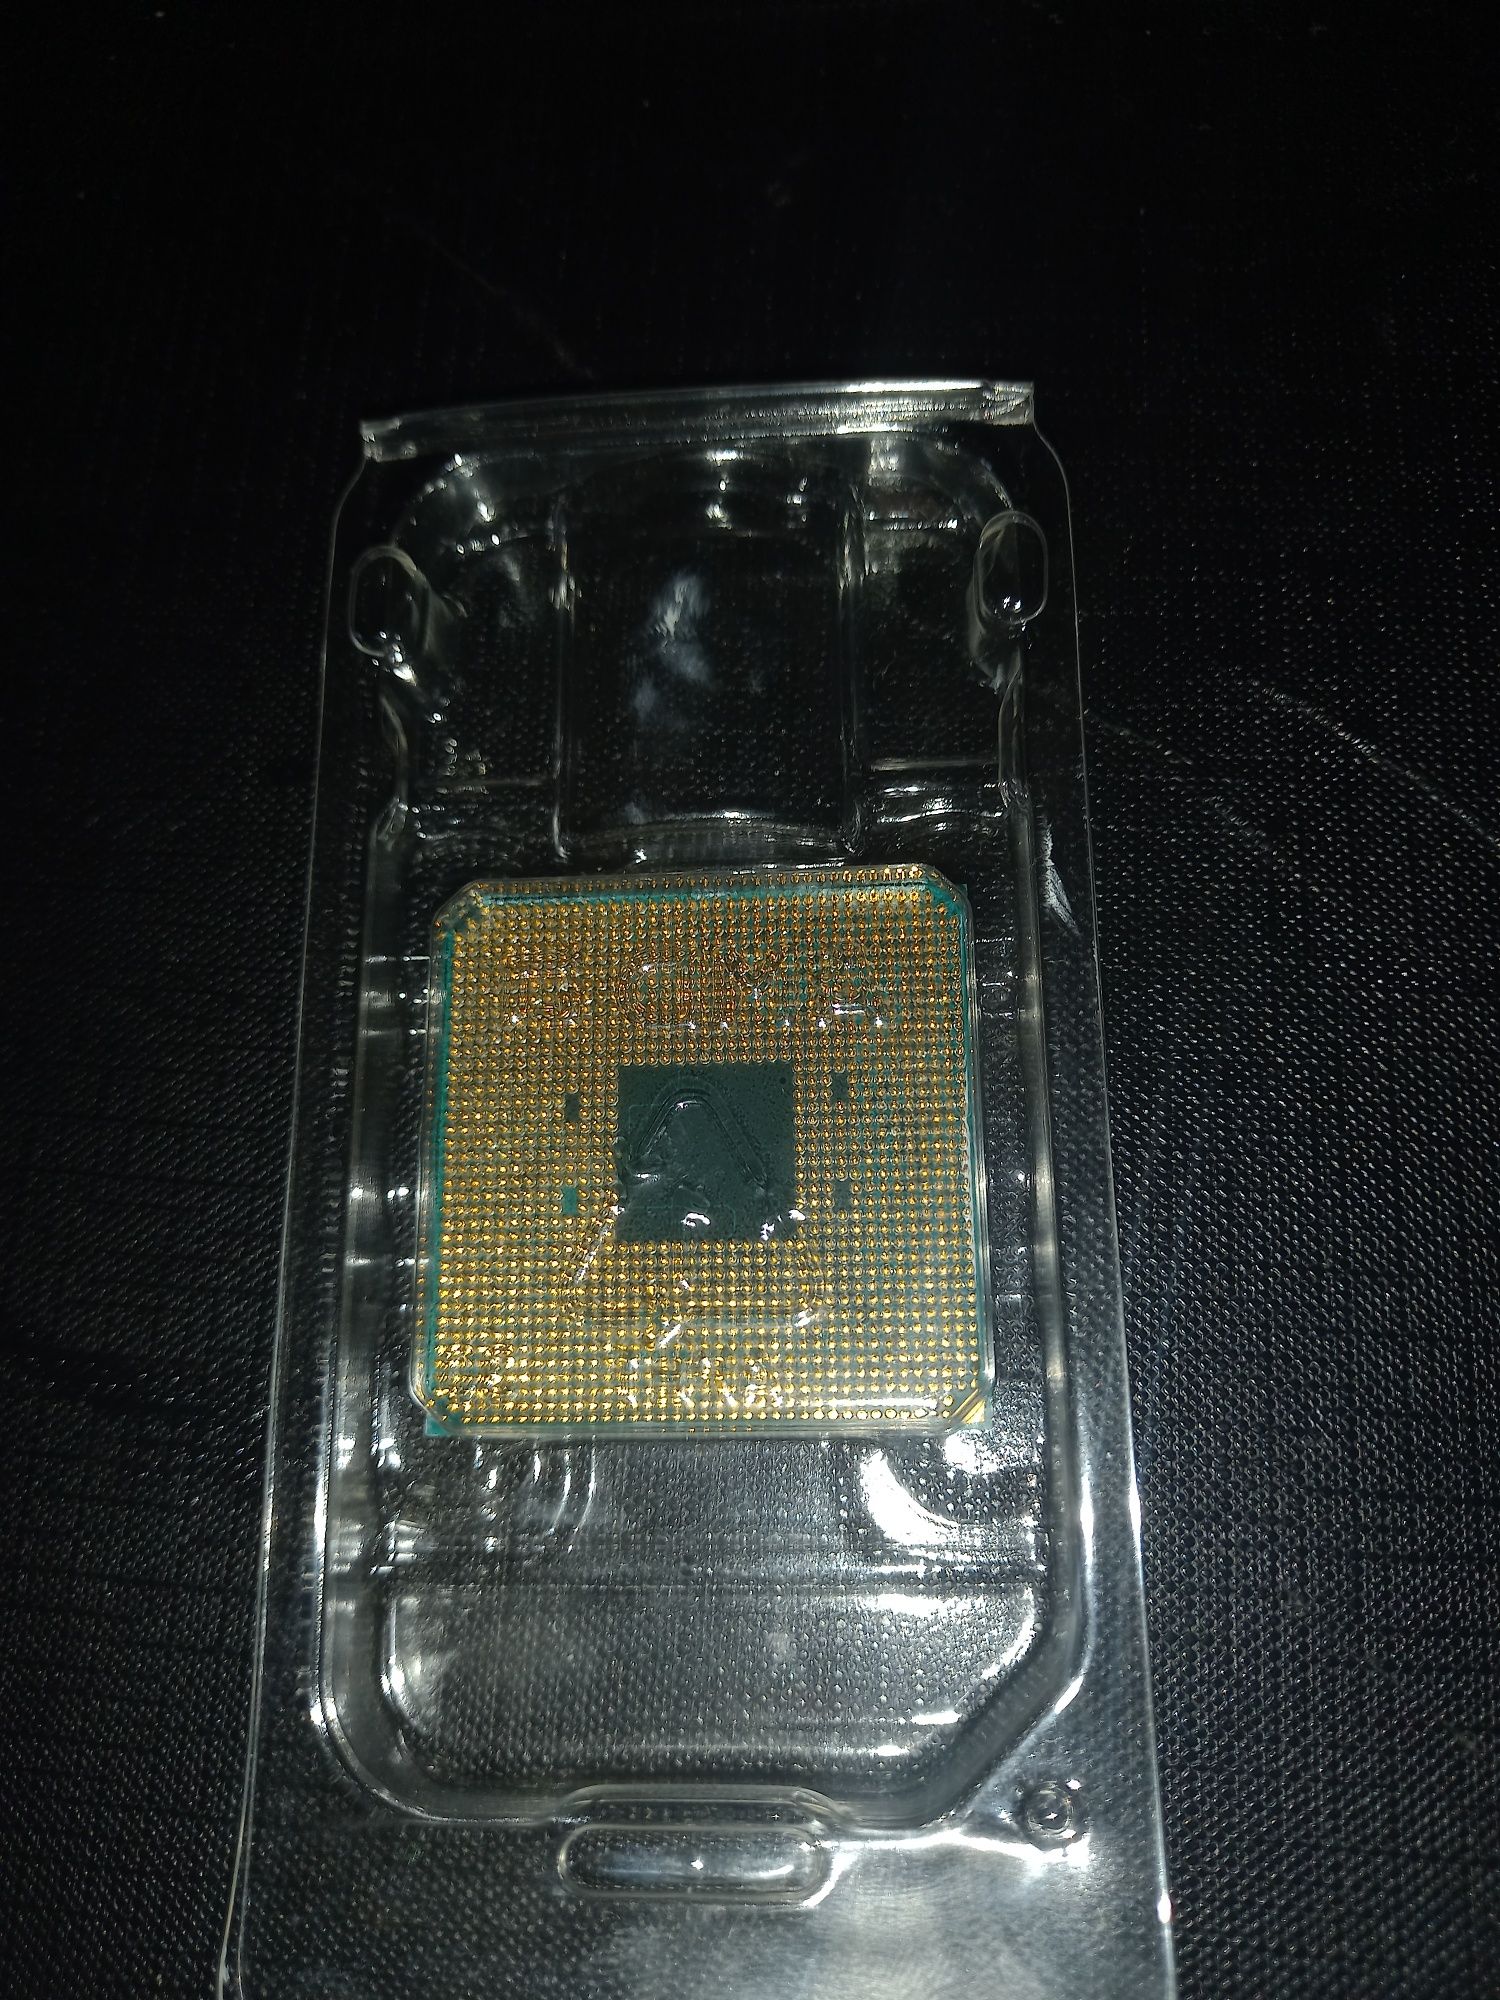 Ryzen 3 2200g AMD